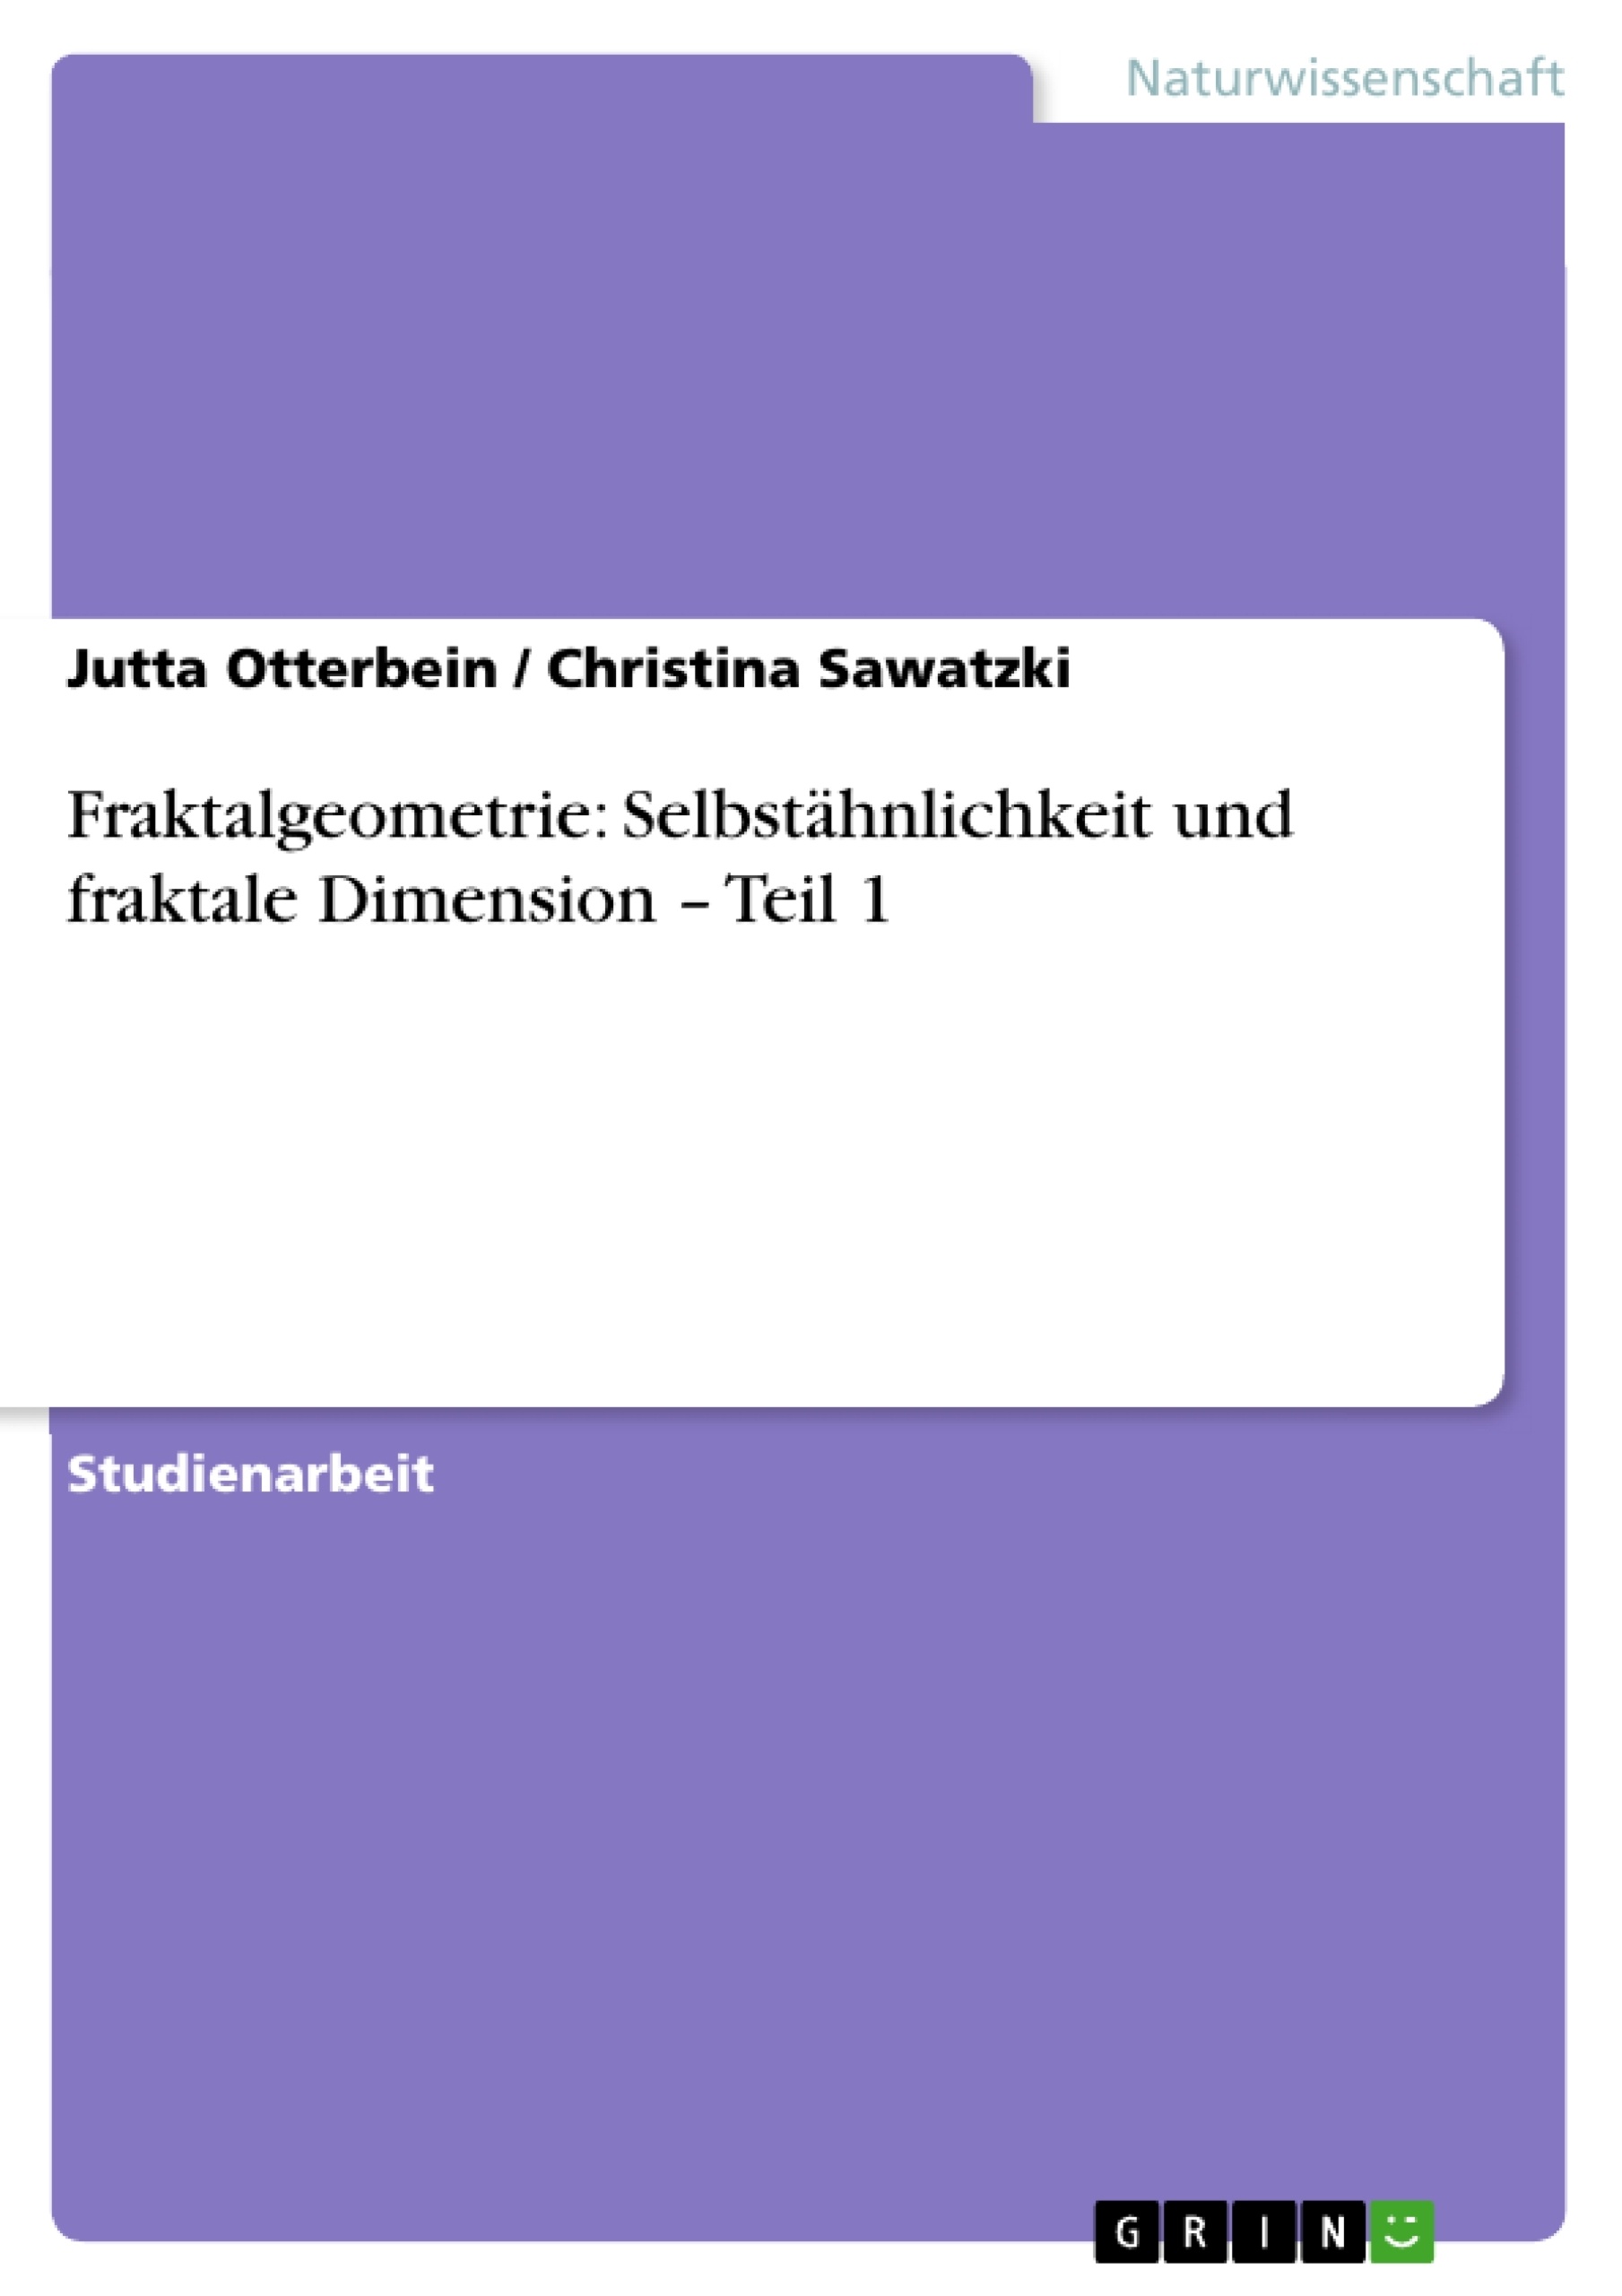 Título: Fraktalgeometrie: Selbstähnlichkeit und fraktale Dimension – Teil 1